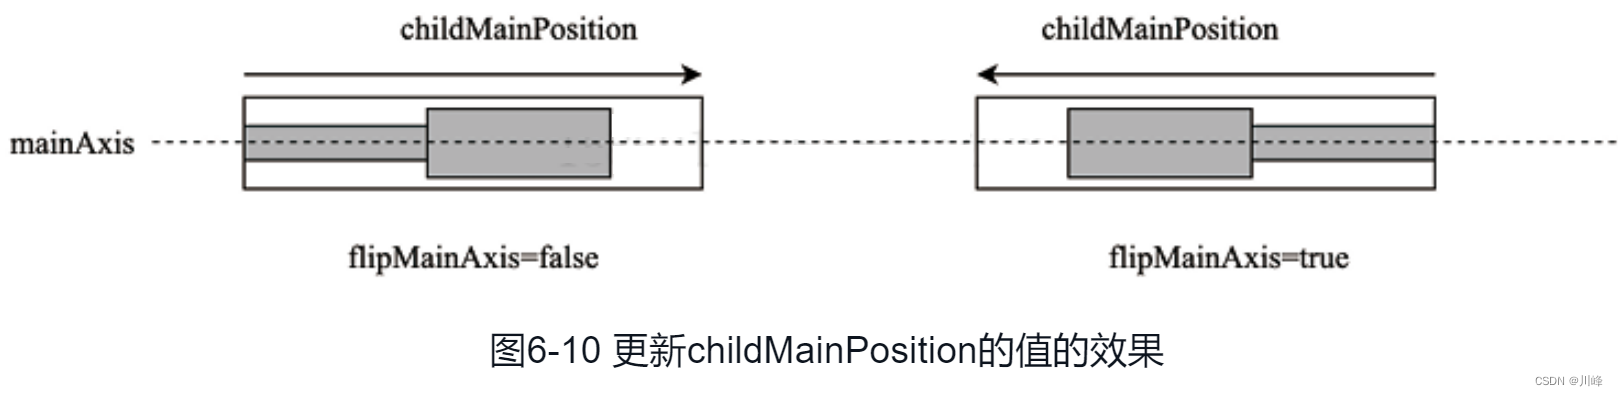 图6-10 更新childMainPosition的值的效果